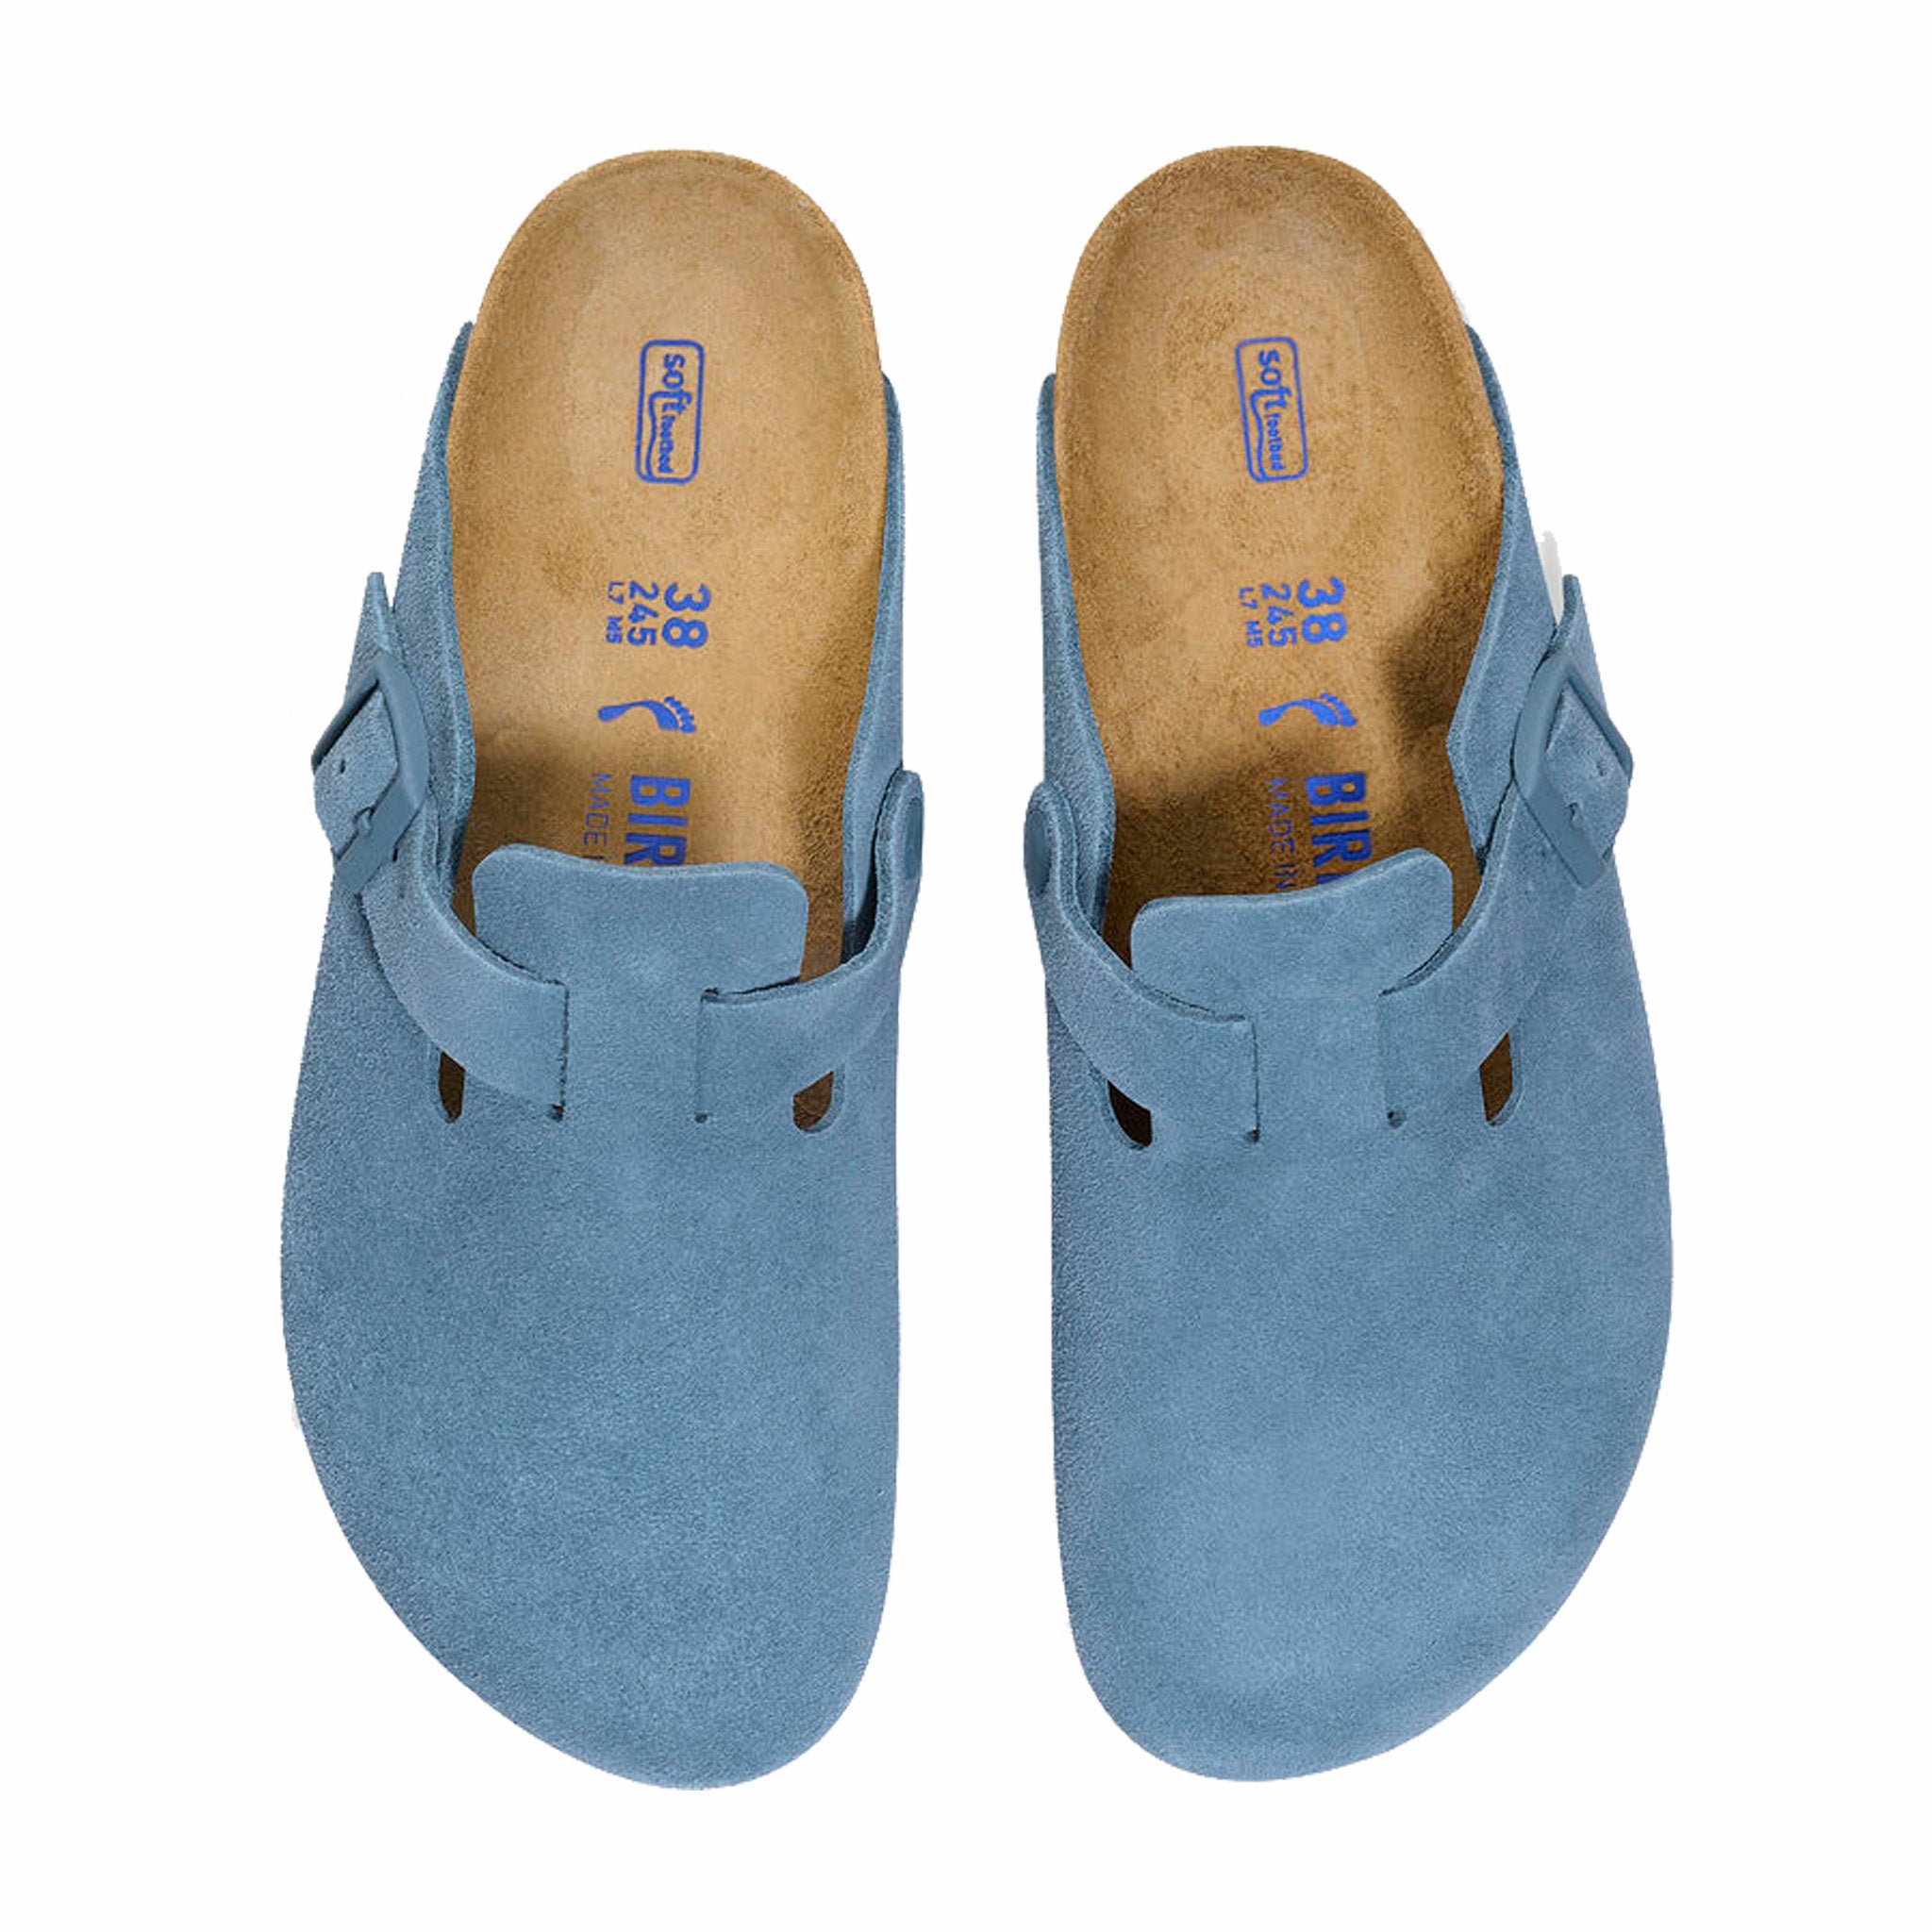 Birkenstock Women’s Boston Suede Leather - Regular (Elemental Blue) - August Shop